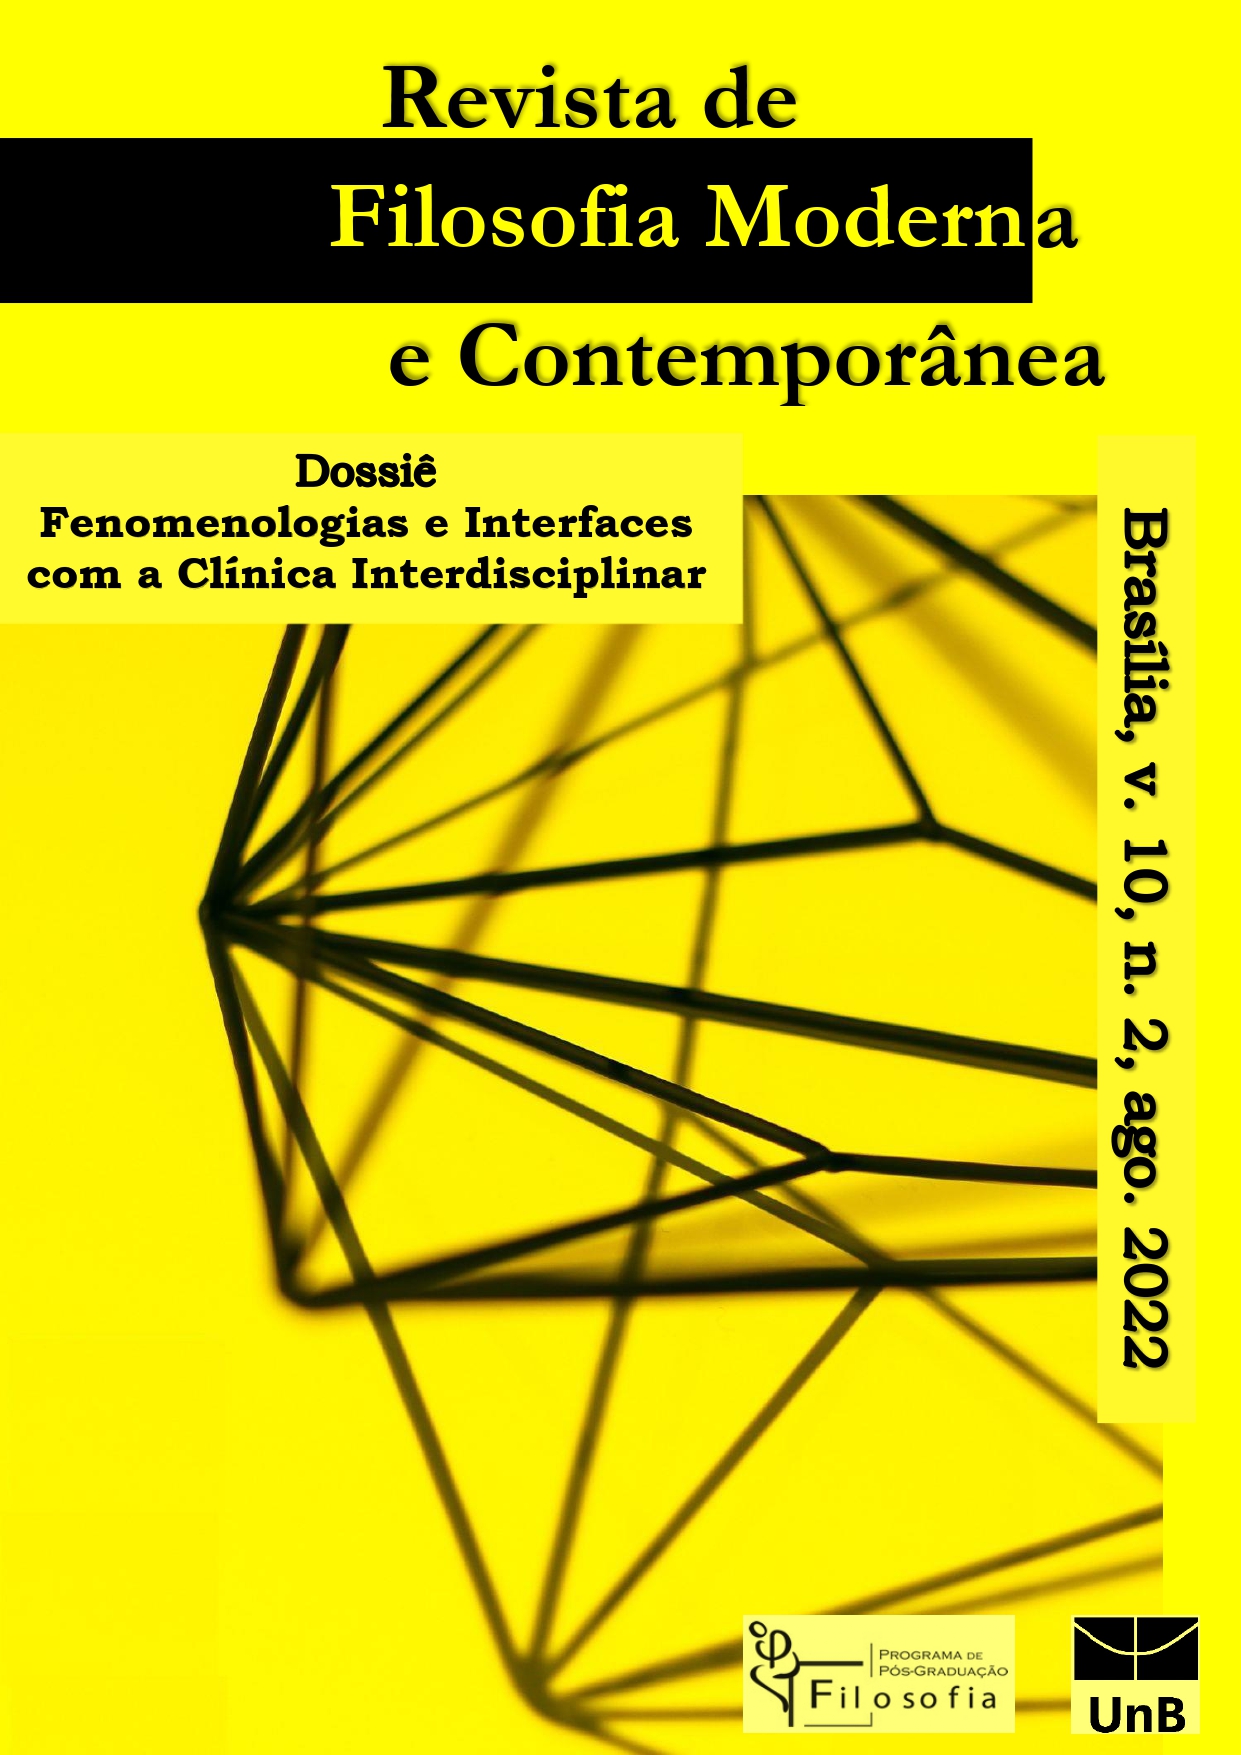 					Ver Vol. 10 Núm. 2 (2022):  Dossiê "Fenomenologias e Interfaces com a Clínica Interdisciplinar"
				